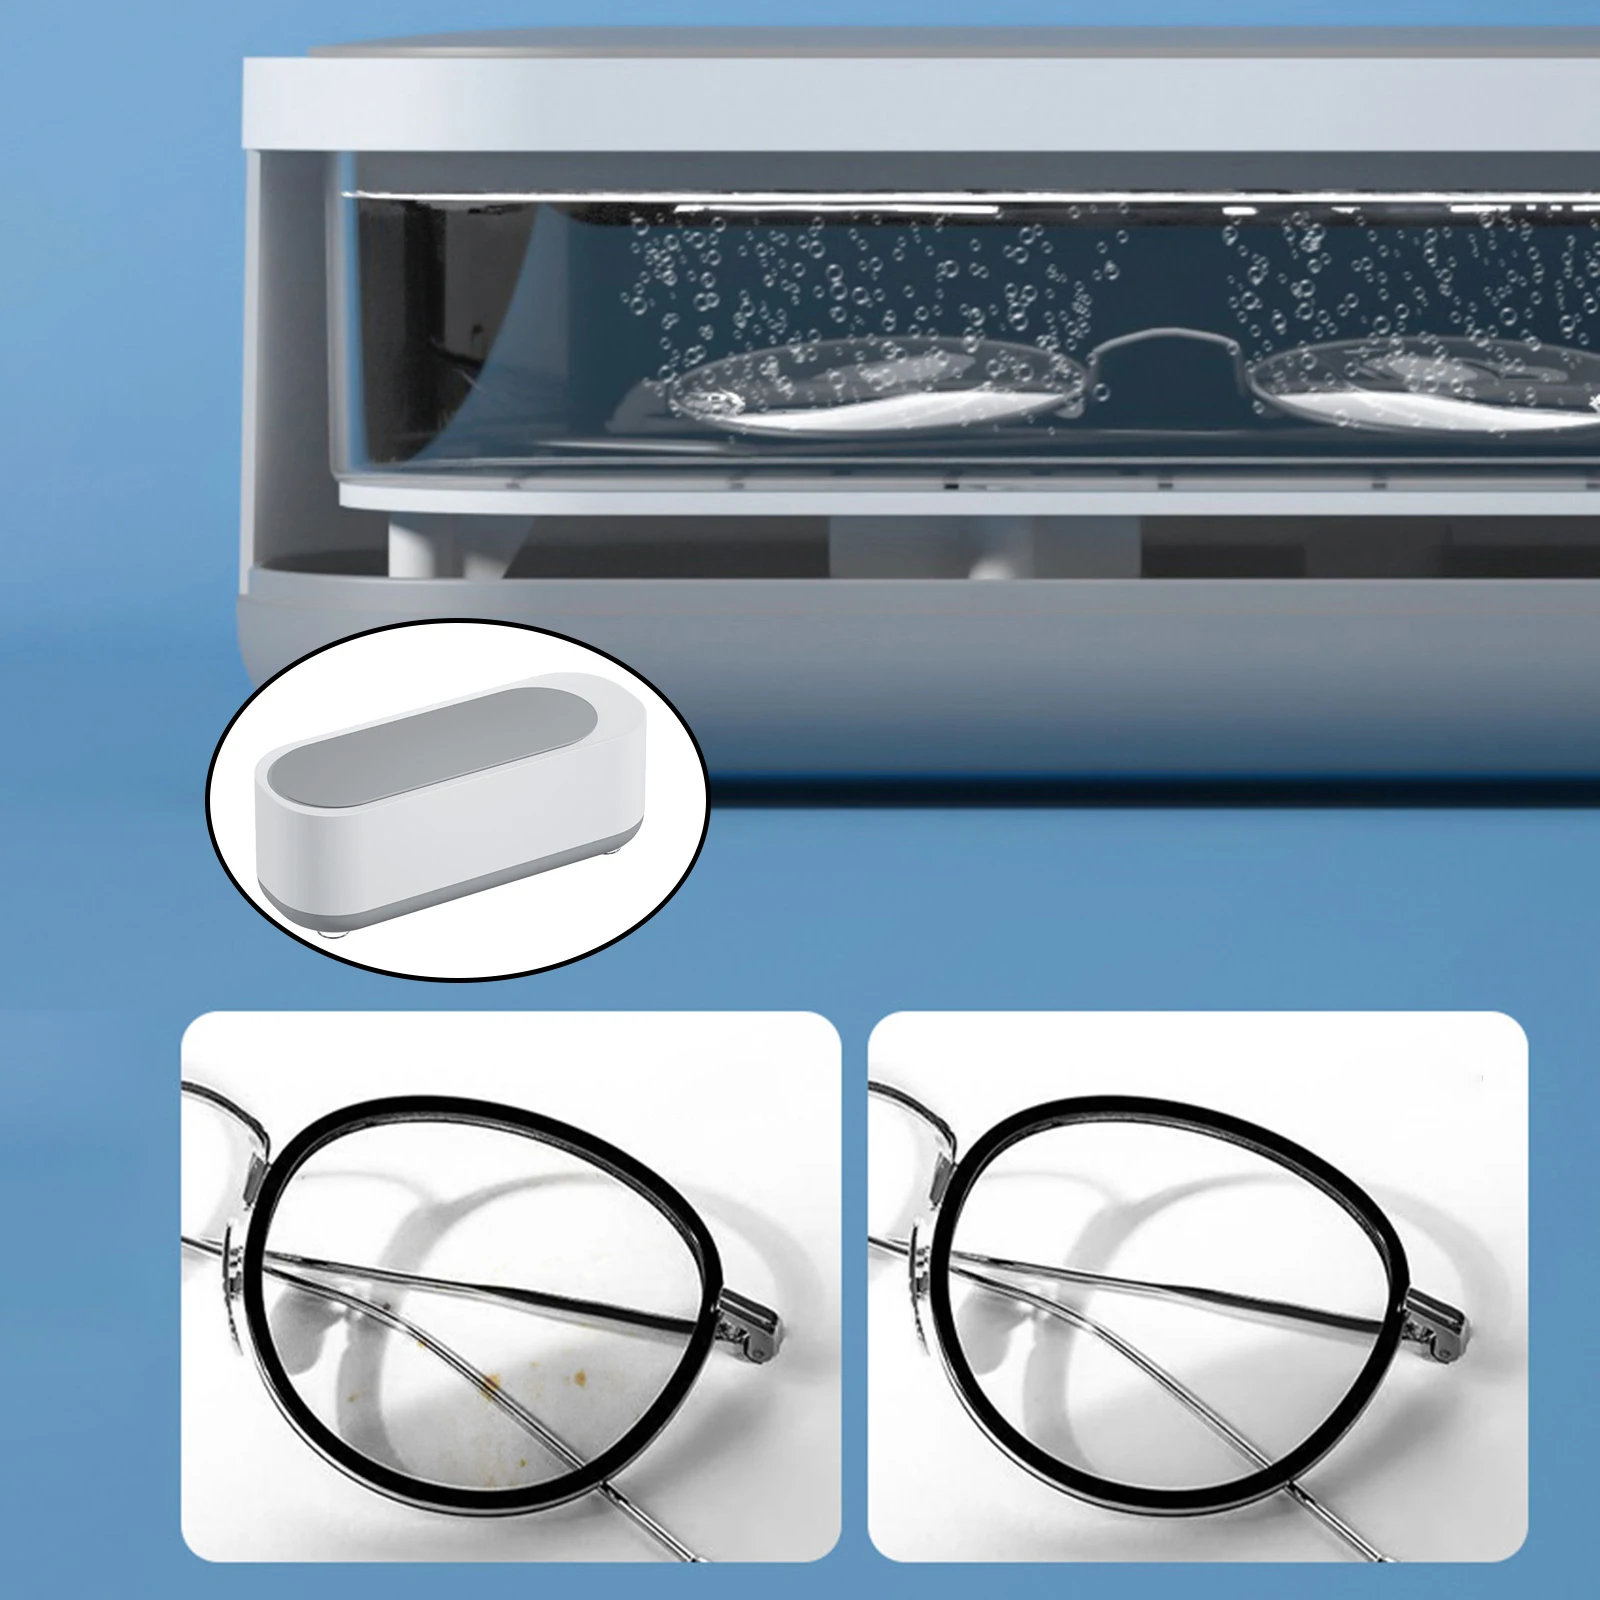 Digital Ultrasonic Jewelry Cleaner Washing Eye Glasses Cleaning Machine